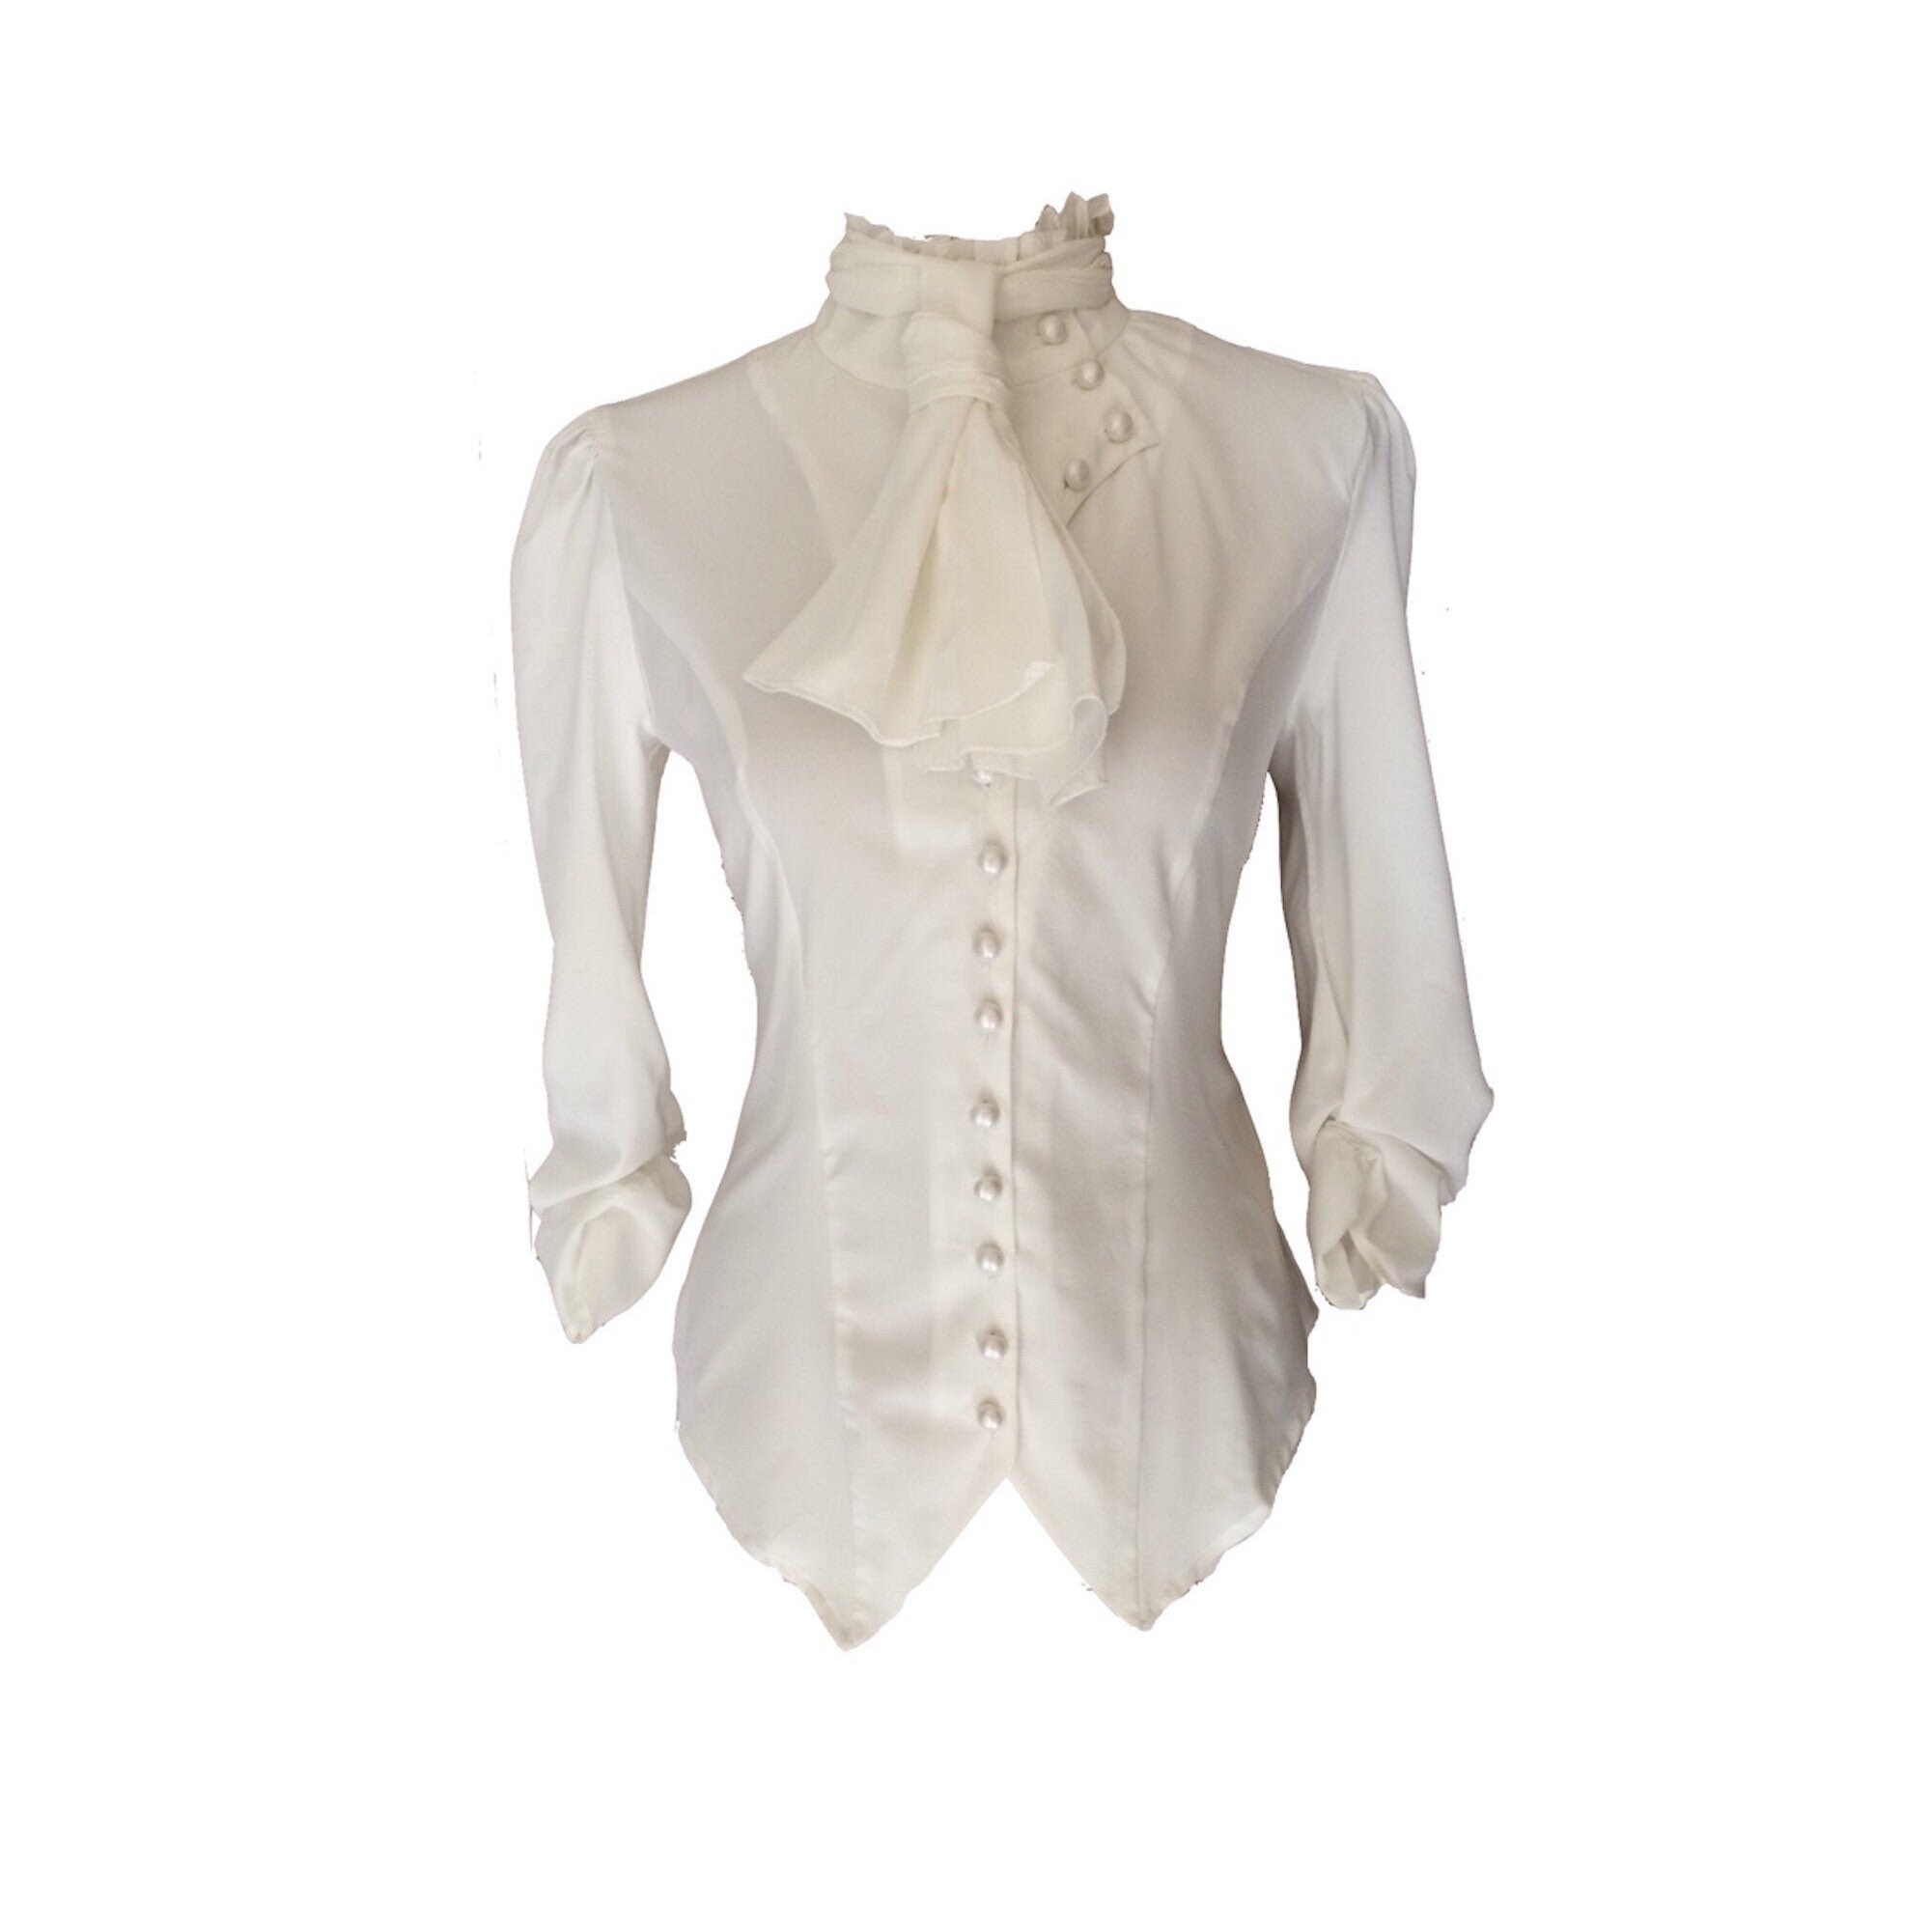 Gothic white blouse